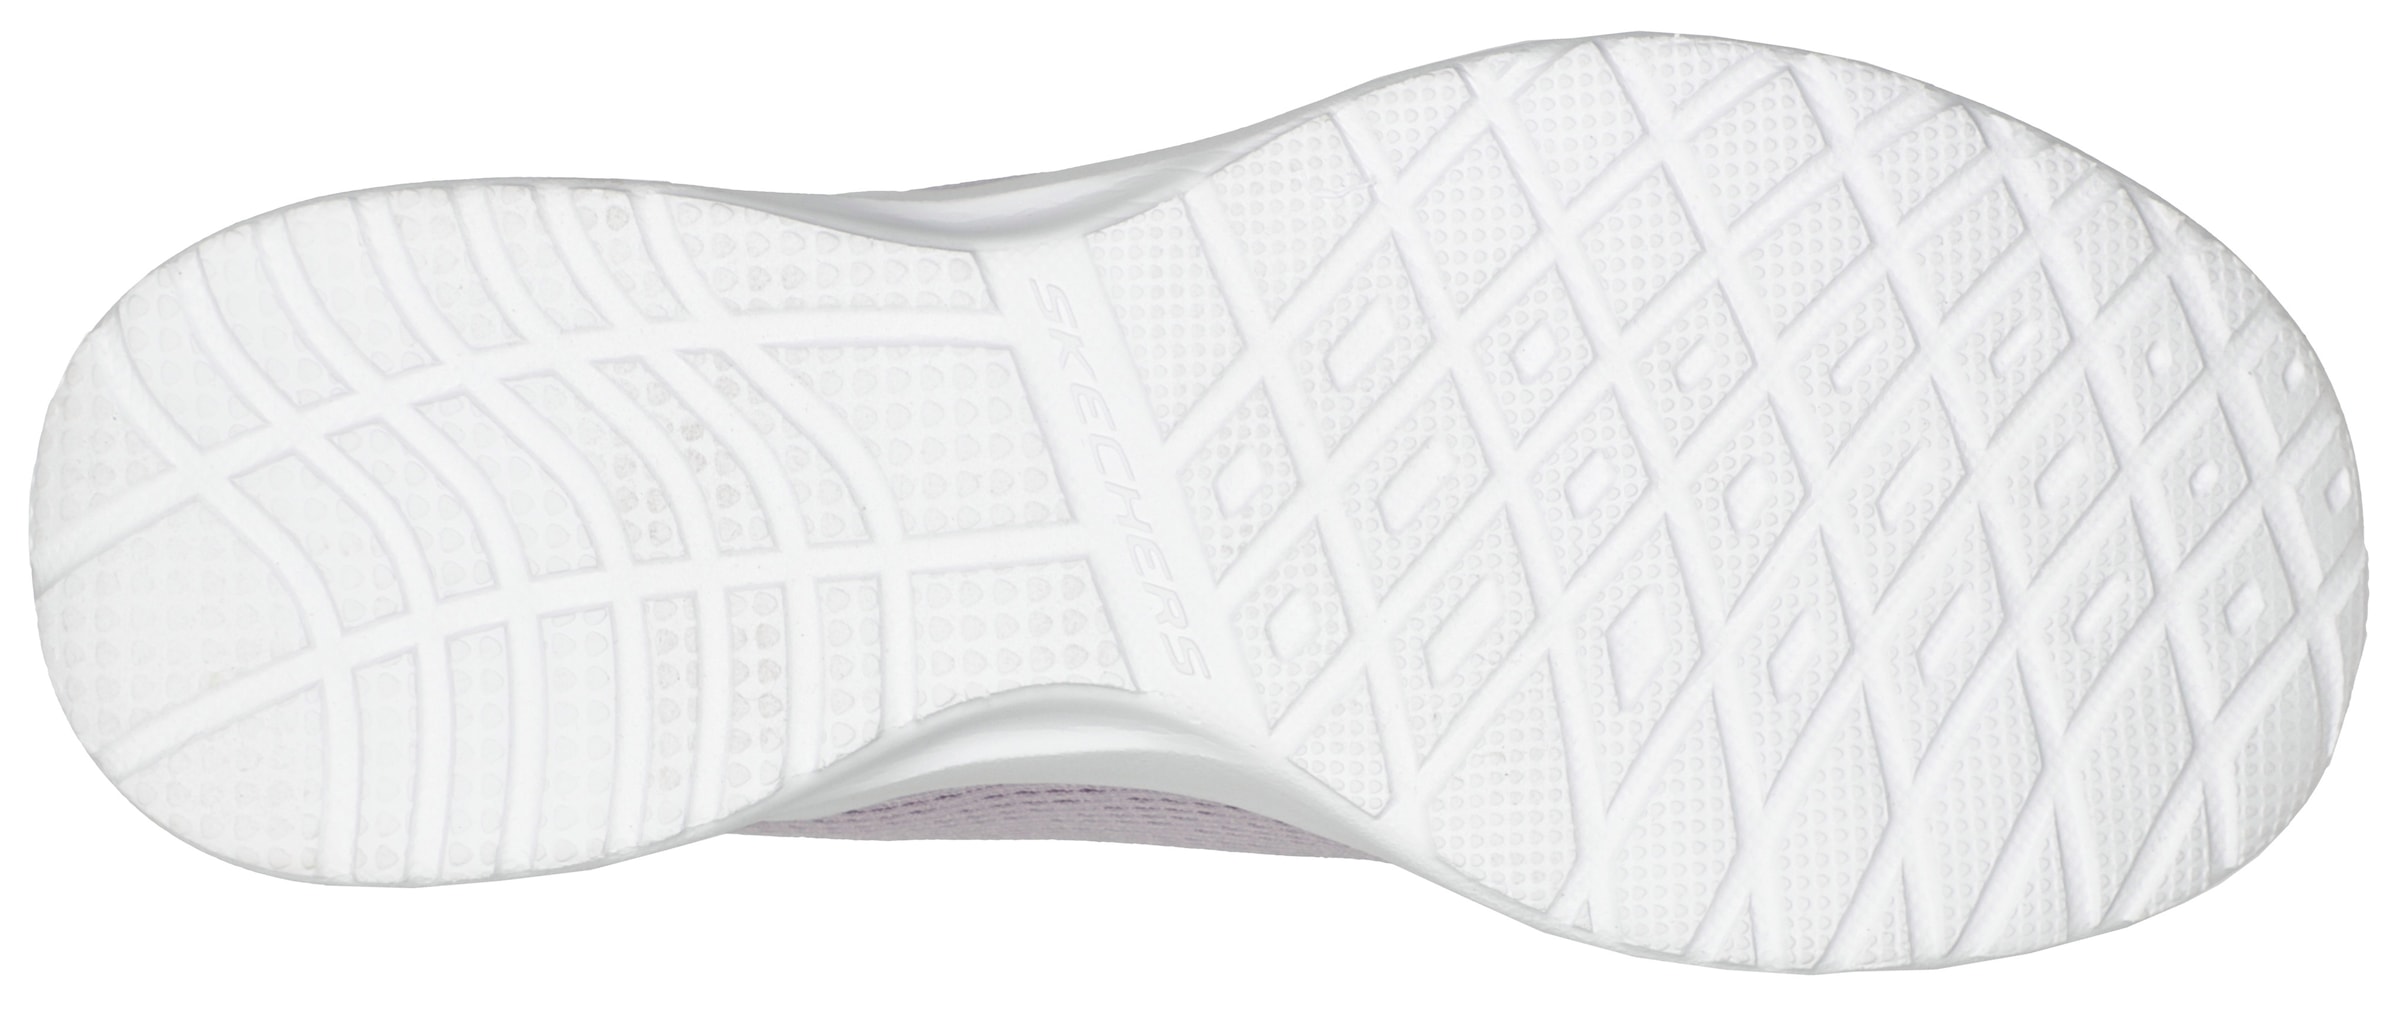 Skechers Sneaker »SKECH-AIR DYNAMIGHT LAID OUT«, mit buntem Print an der Ferse, Freizeitschuh, Halbschuh, Schnürschuh